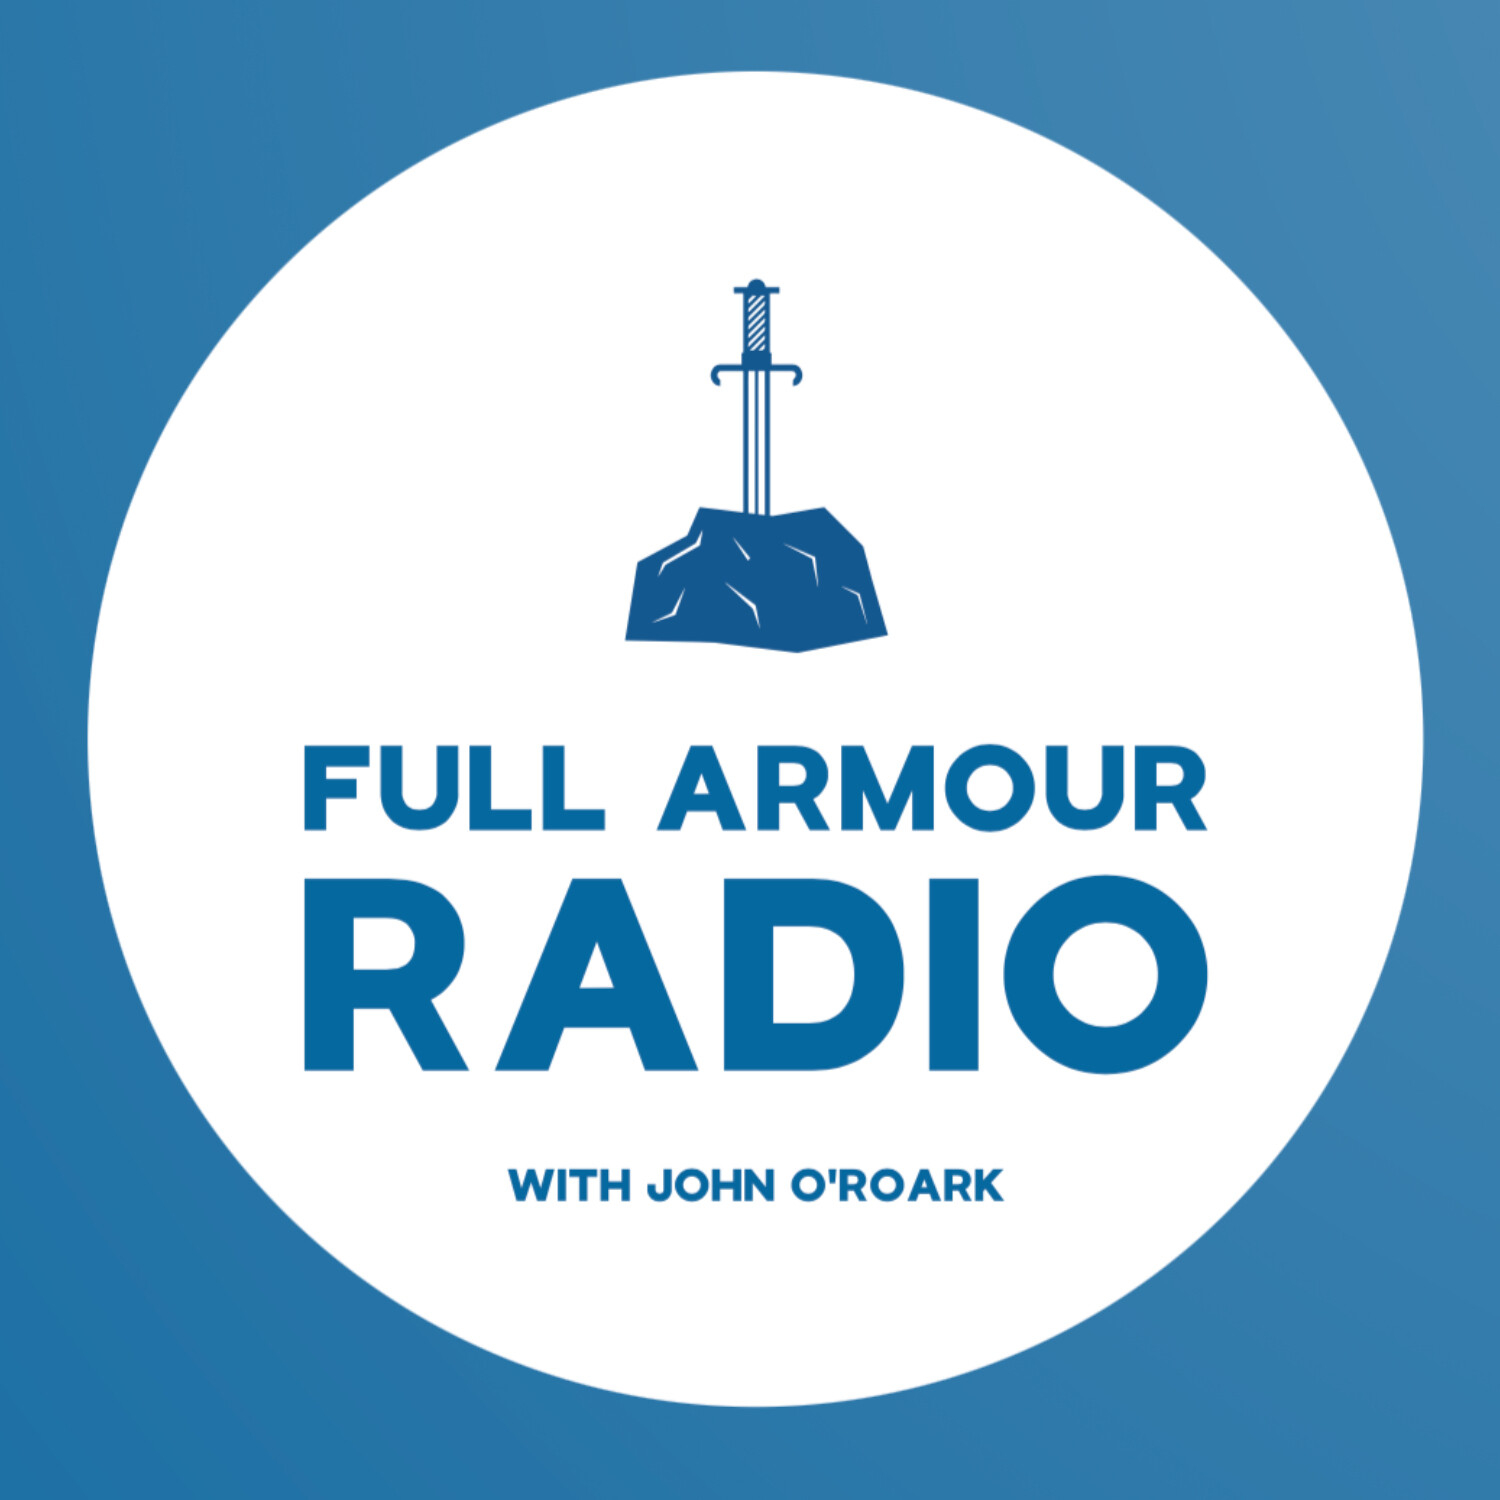 Full Armour Radio